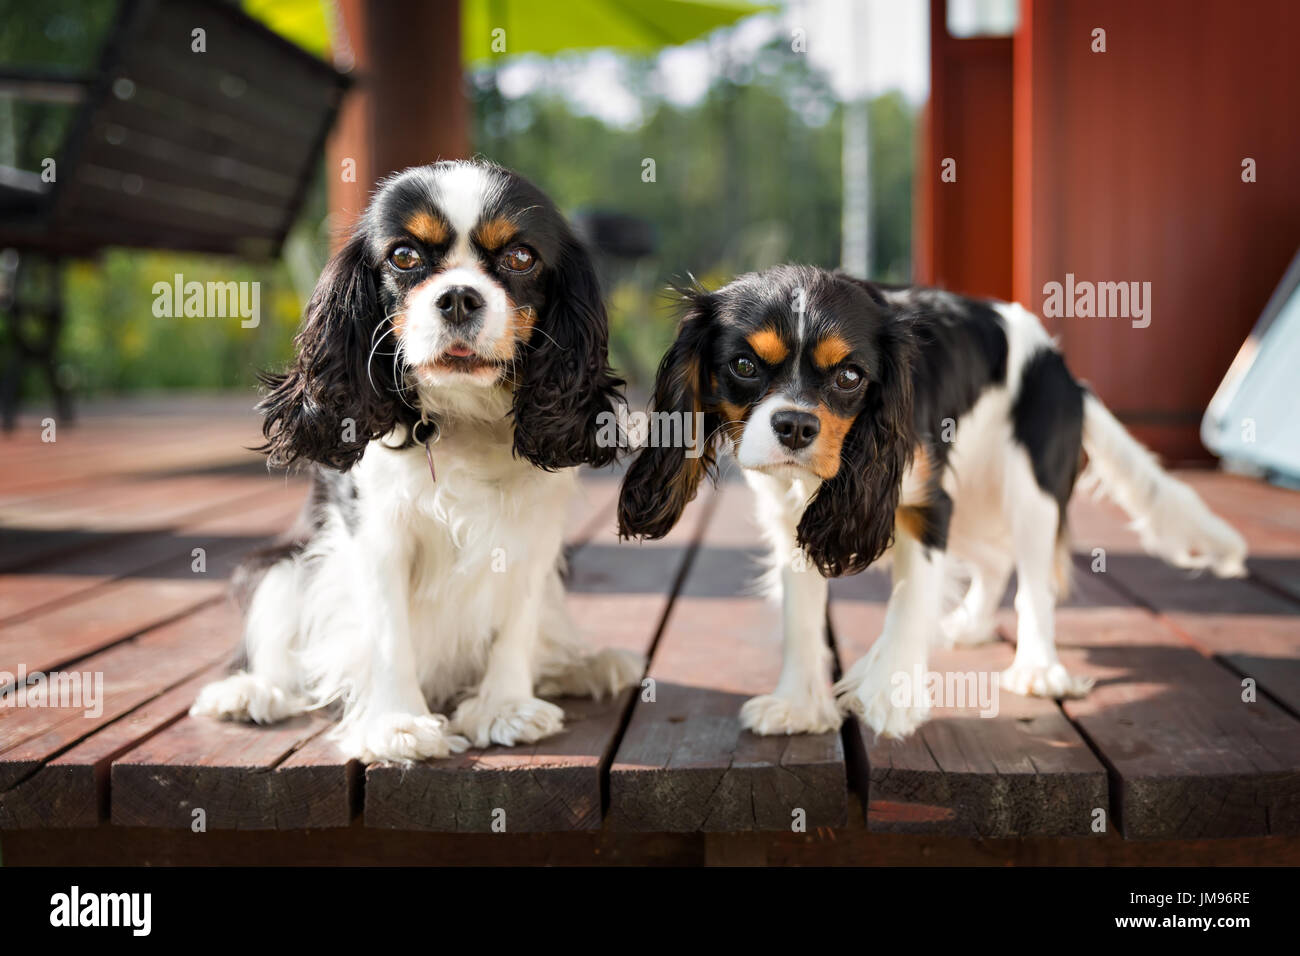 Porträt von zwei Hunden - niedliche cavalier Spaniel zusammen Stockfoto